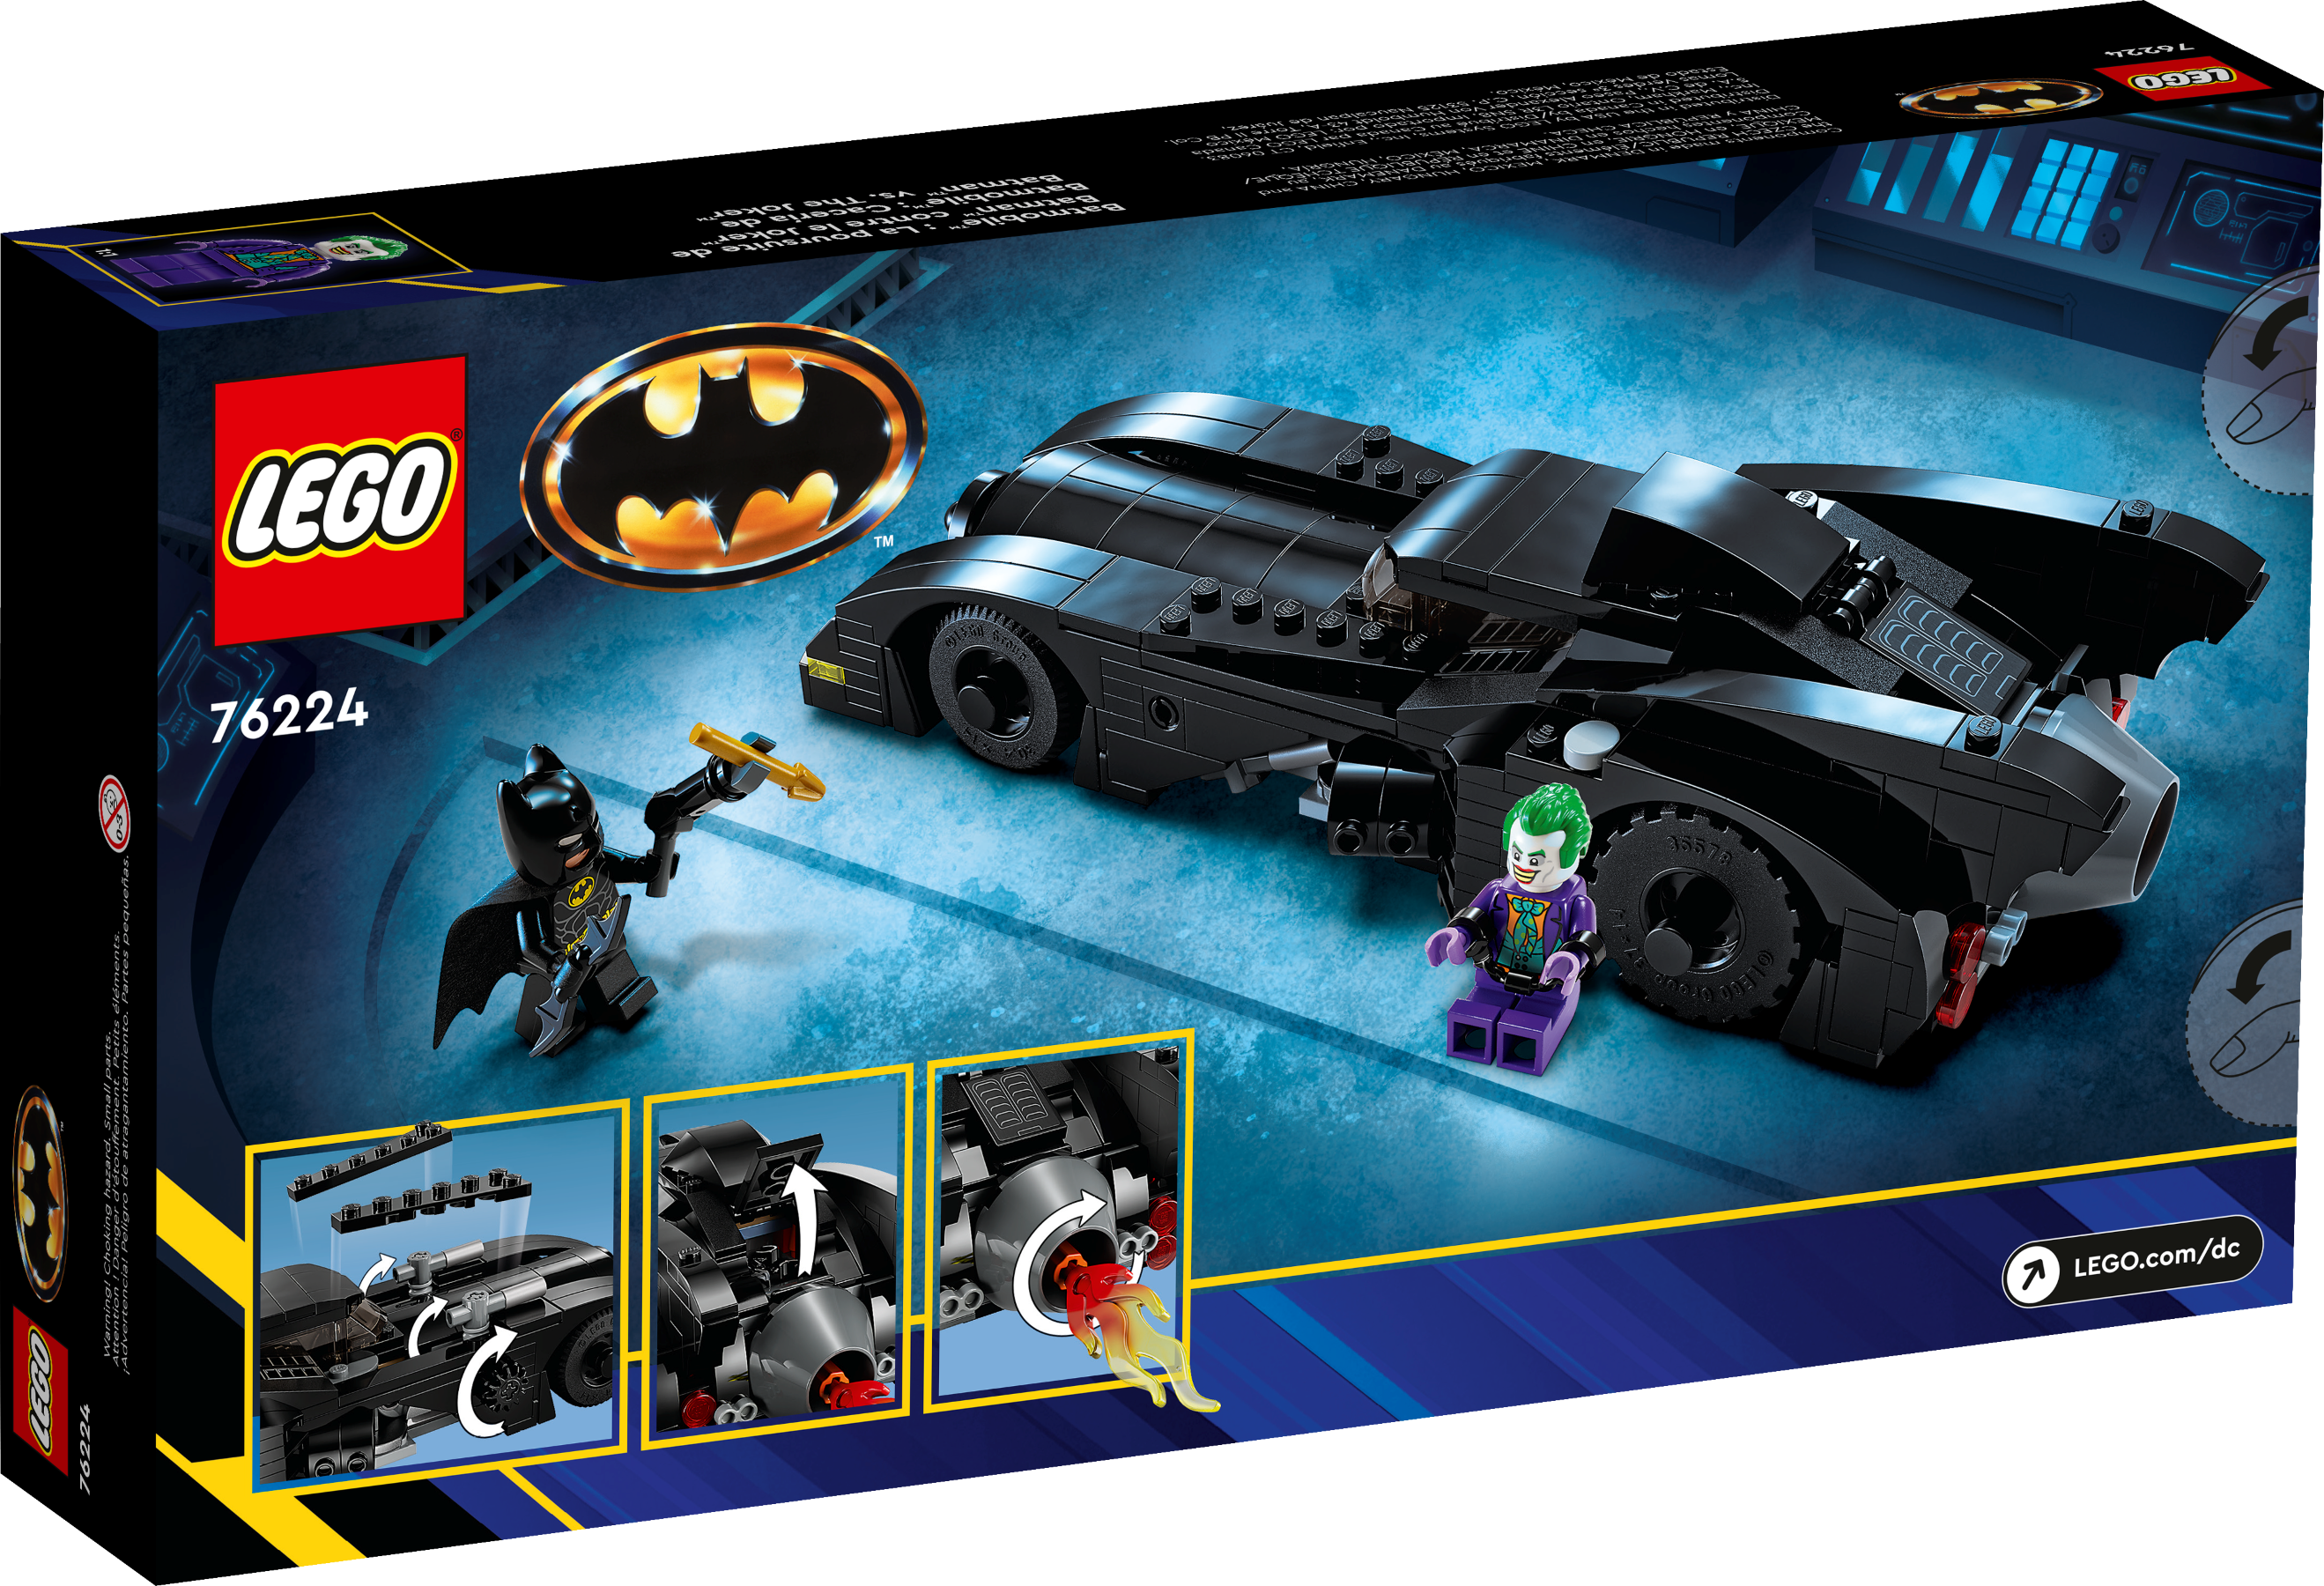 Buy LEGO® Batmobile™ Pursuit: Batman™ vs. The Joker™ online for24